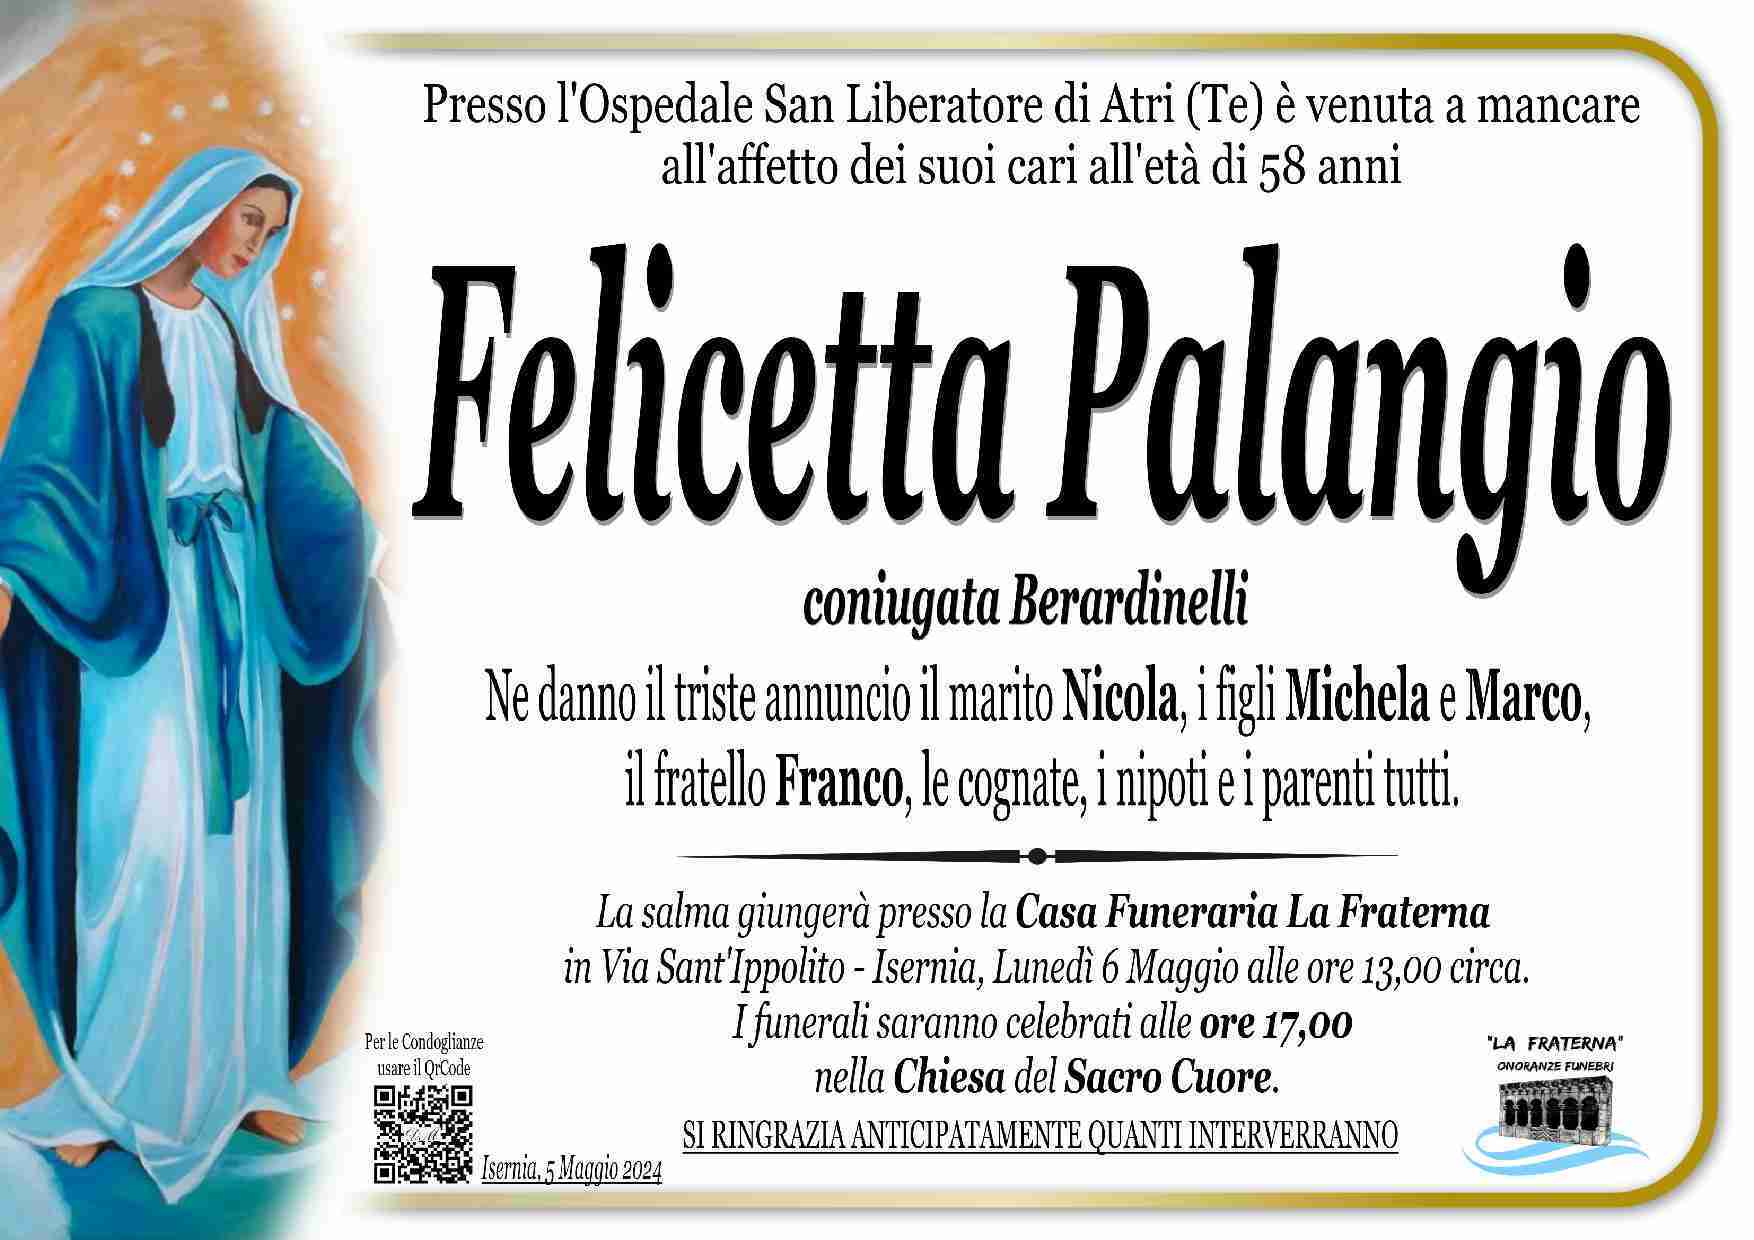 Felicetta Palangio